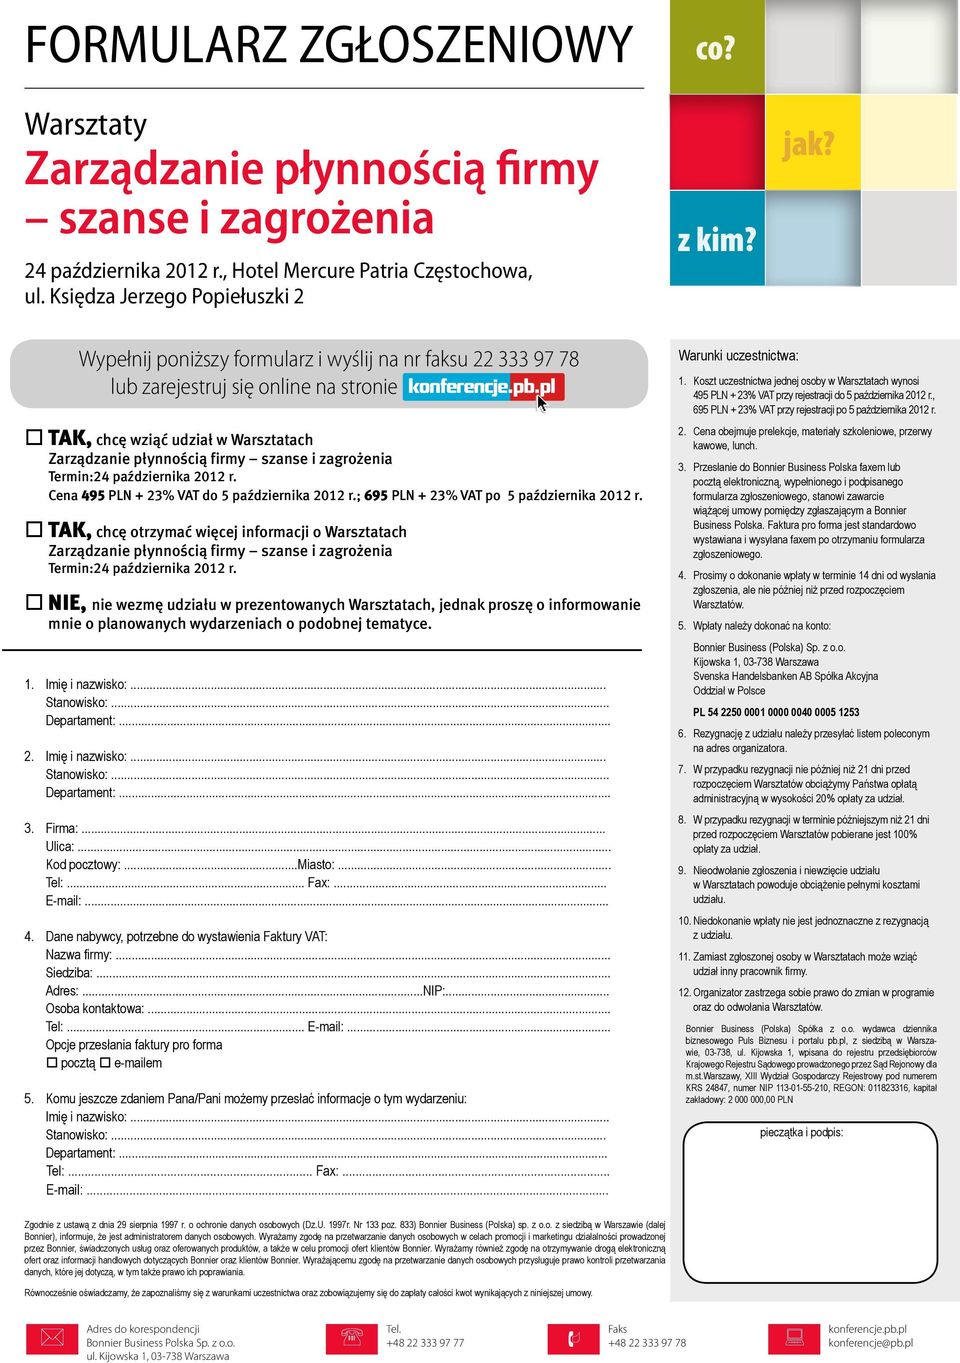 pl TAK, chcę wziąć udział w Warsztatach Zarządzanie płynnością firmy szanse i zagrożenia Termin:24 października 2012 r. Cena 495 PLN + 23% VAT do 5 października 2012 r.